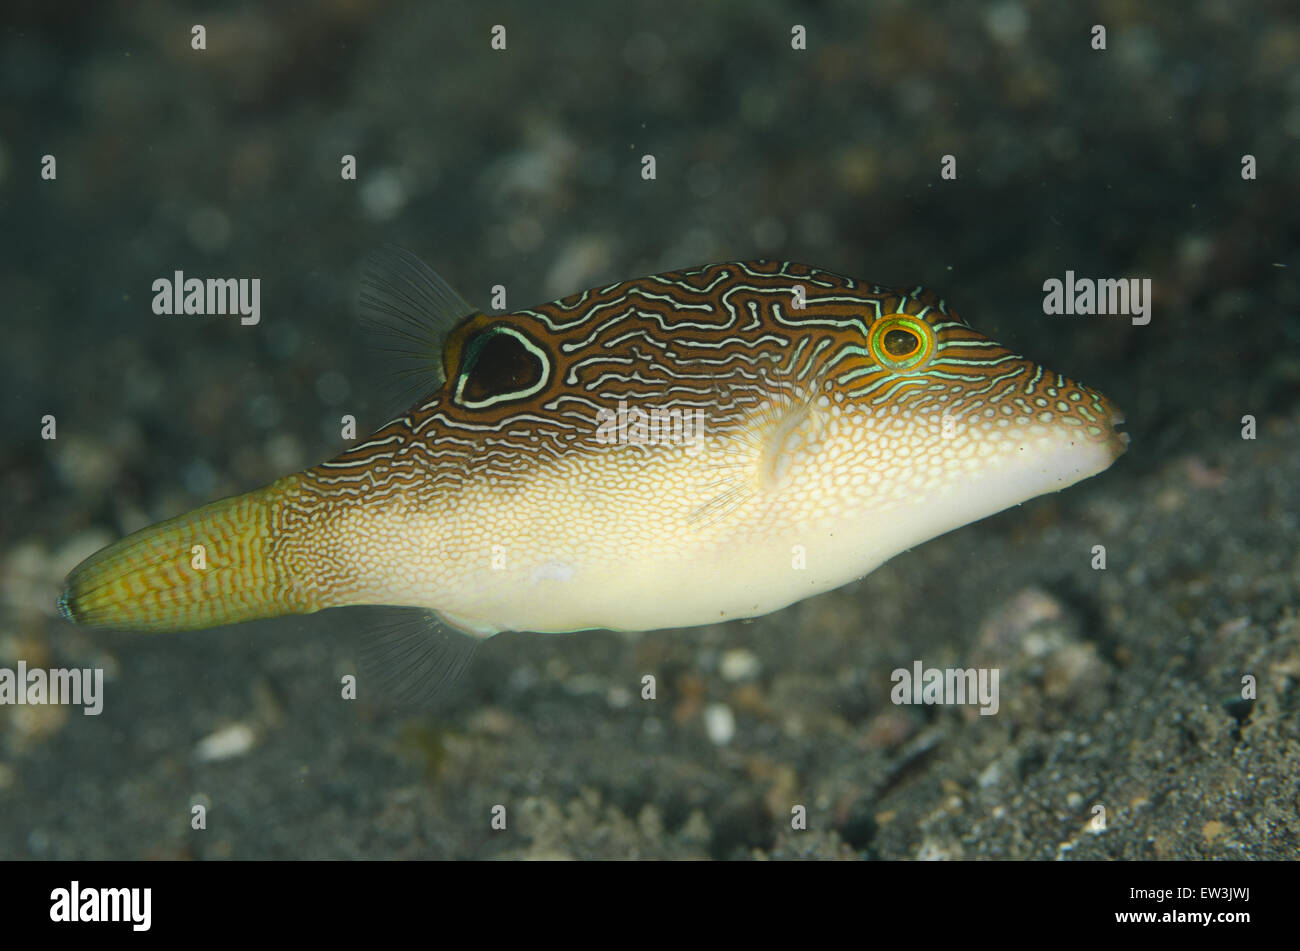 Toby comprimido (Canthigaster compressa) adulto, natación, Aer Perang, estrecho de Lembeh, Sulawesi, la mayor de las islas Sunda, Indonesia, Febrero Foto de stock